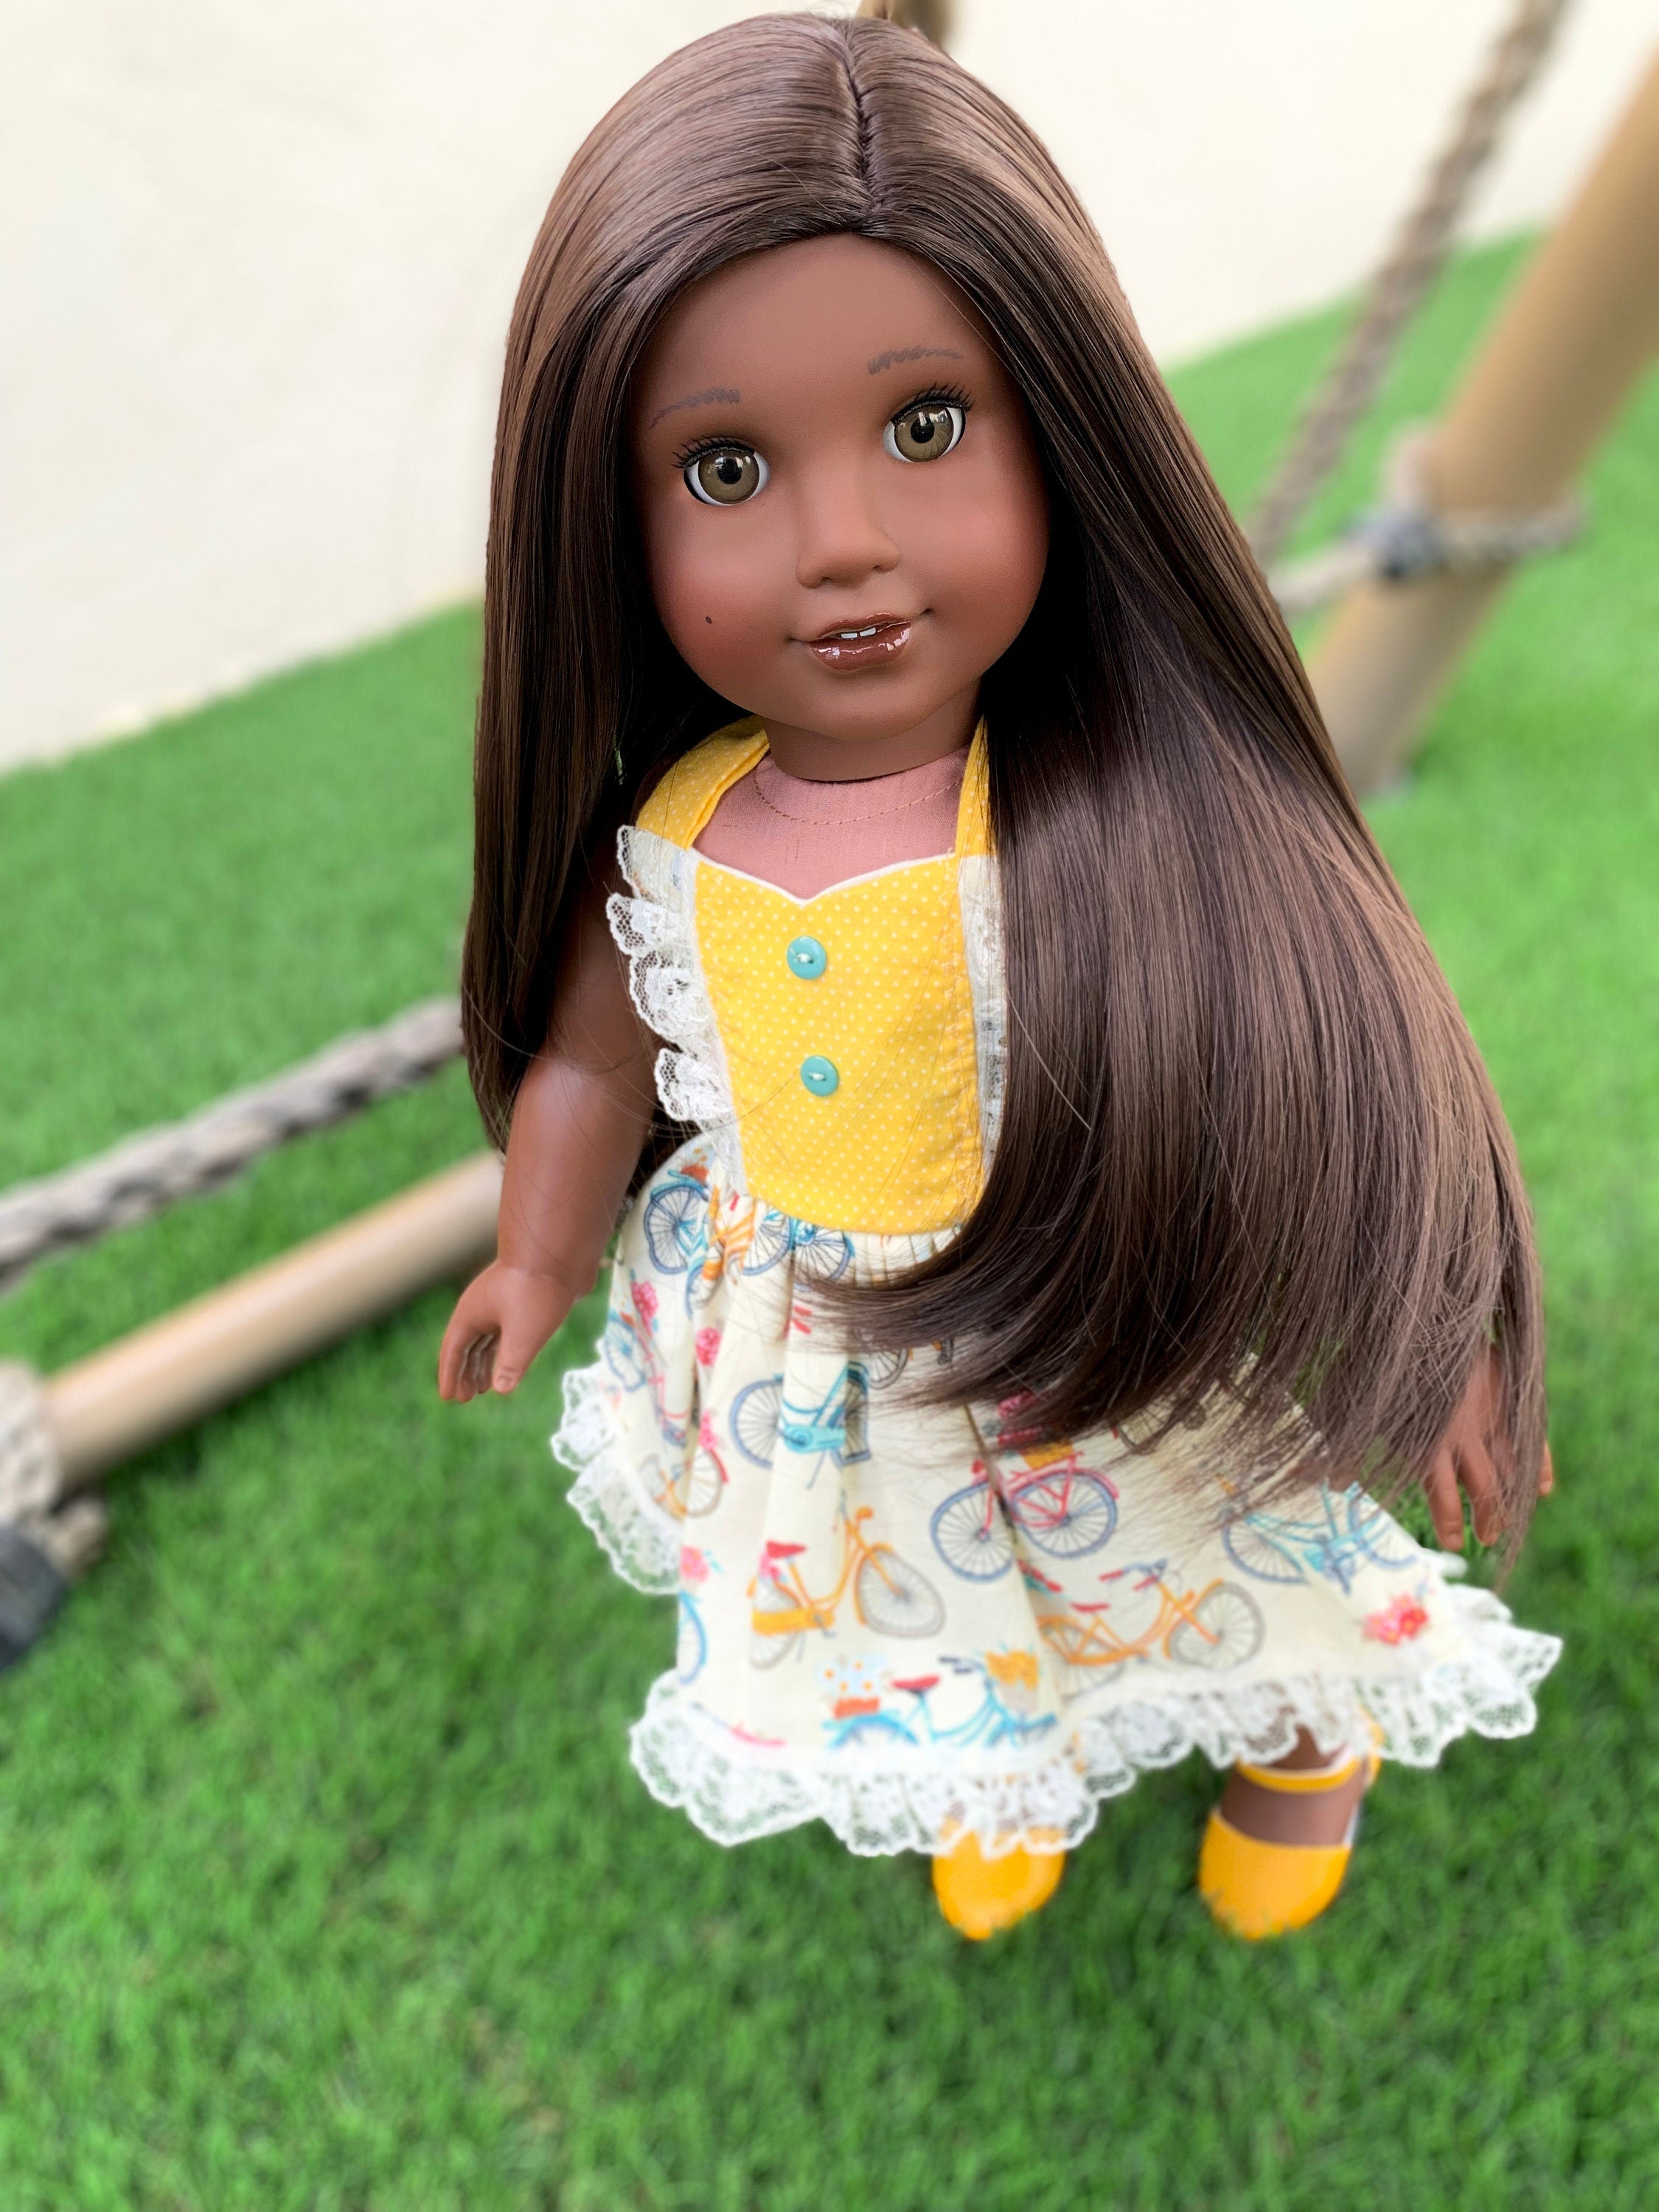 Custom doll wig for 18" American Girl Dolls - Heat Safe - Tangle Resistant - fits 10-11" head size of 18" dolls OG Blythe BJD Gotz Brown